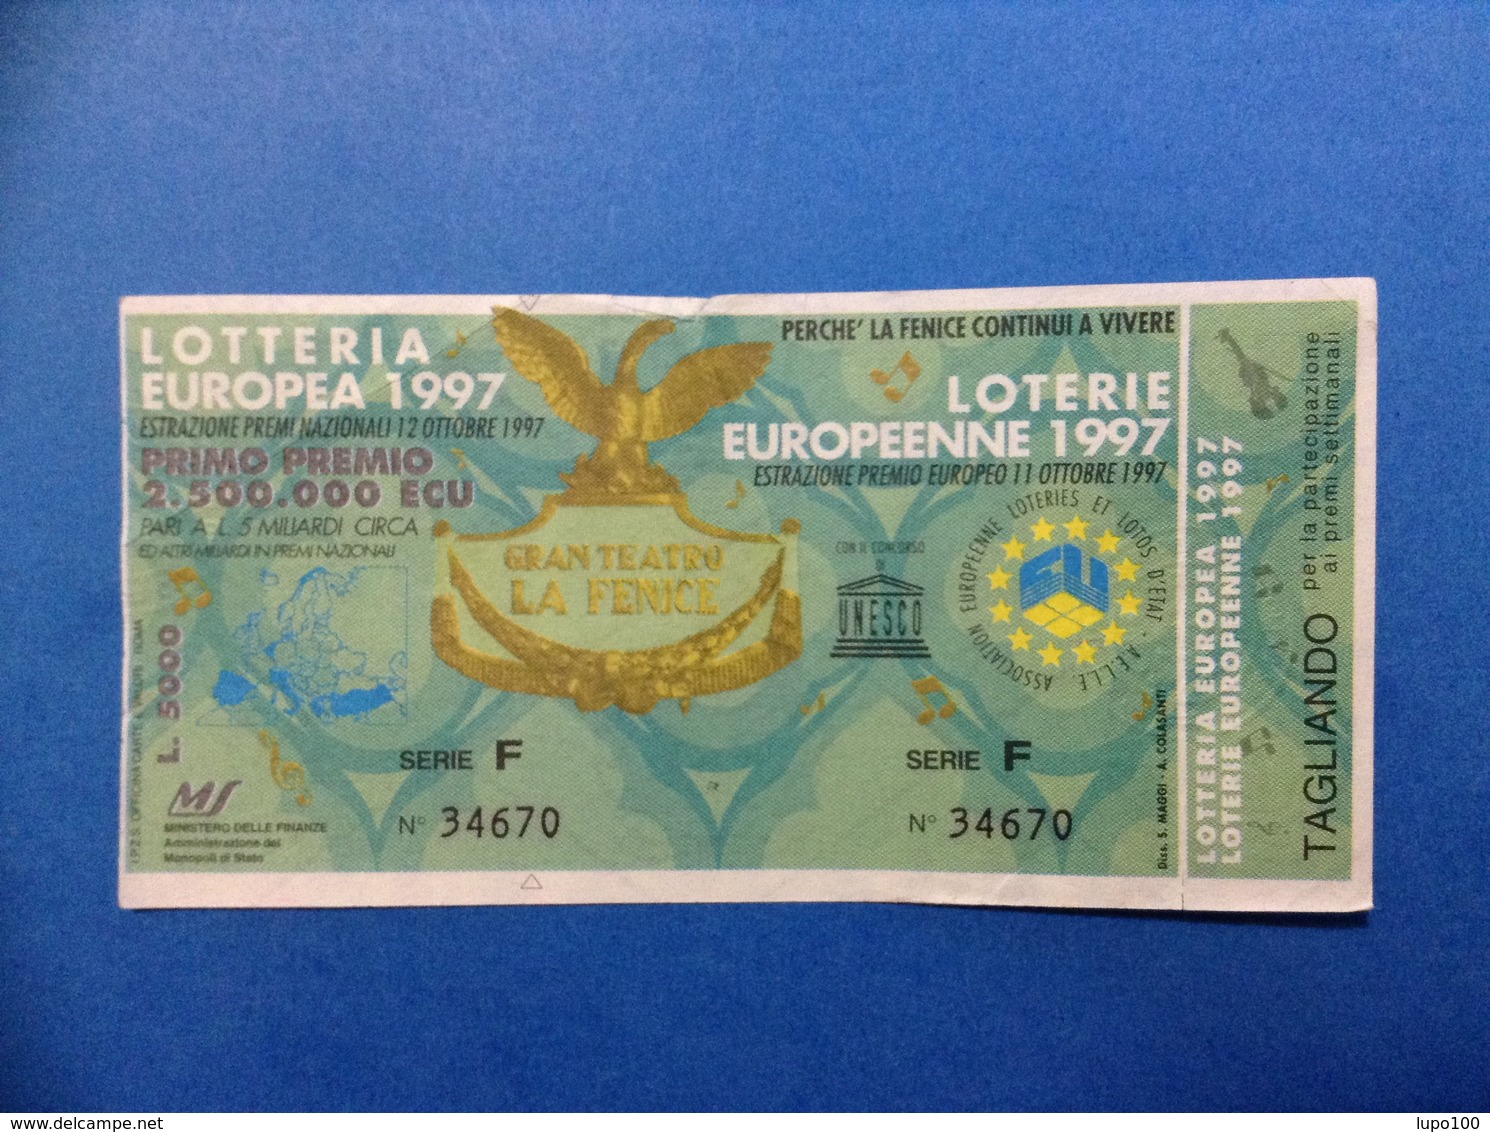 1997 BIGLIETTO LOTTERIA EUROPEA E NAZIONALE UNESCO GRAN TEATRO LA FENICE - Lottery Tickets